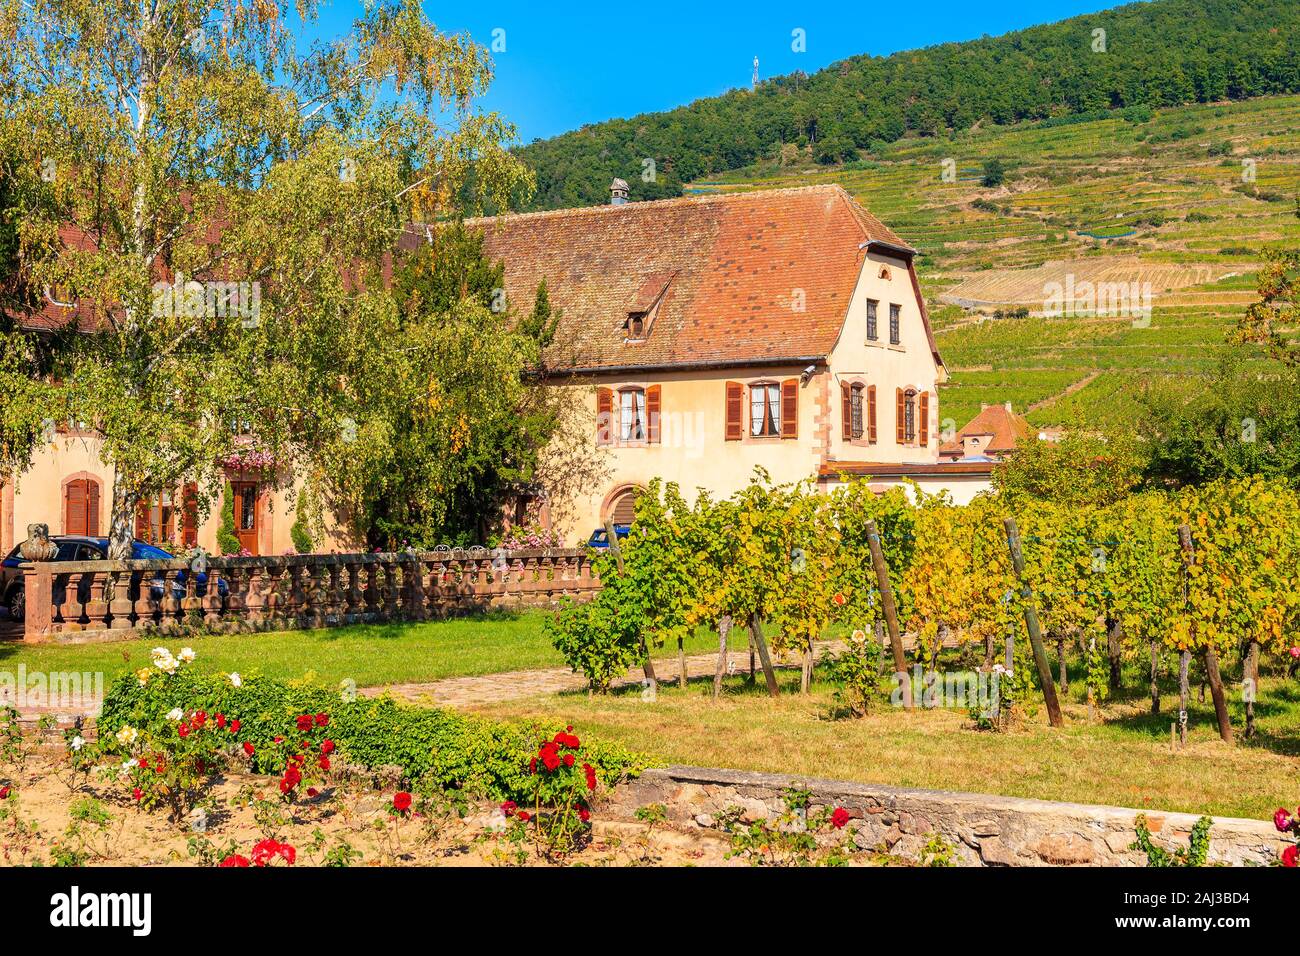 Típica casa de campo entre verdes viñedos cerca de la aldea de Kientzheim en la ruta del vino de Alsacia, Francia Foto de stock